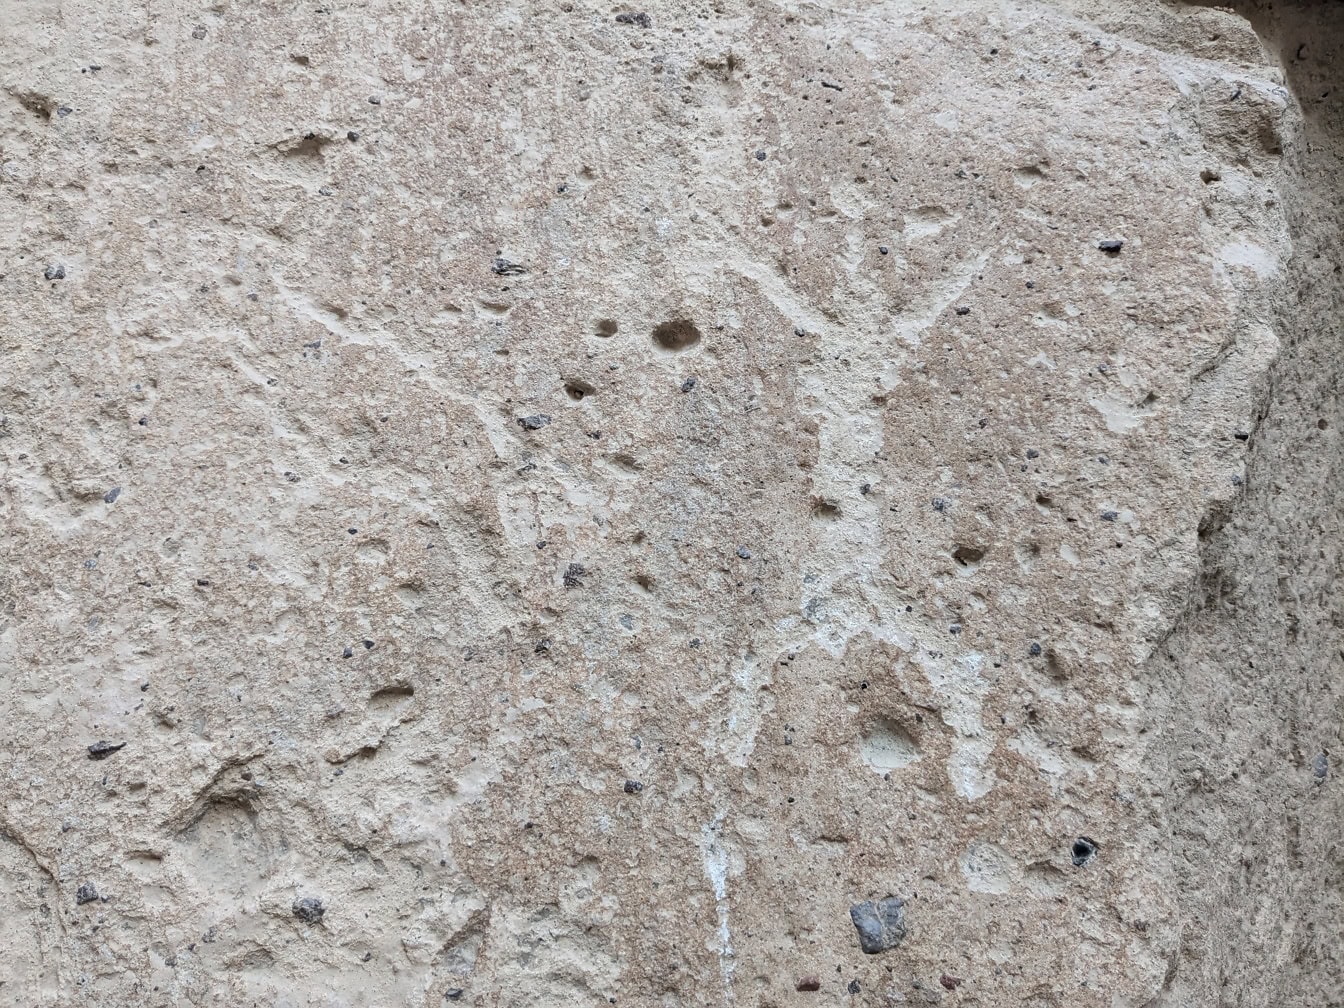 ภาพสกัดหินแกะสลักด้วยหินที่แสดงภาพบุคคลในยุคหินที่มีแขนและขากางออก